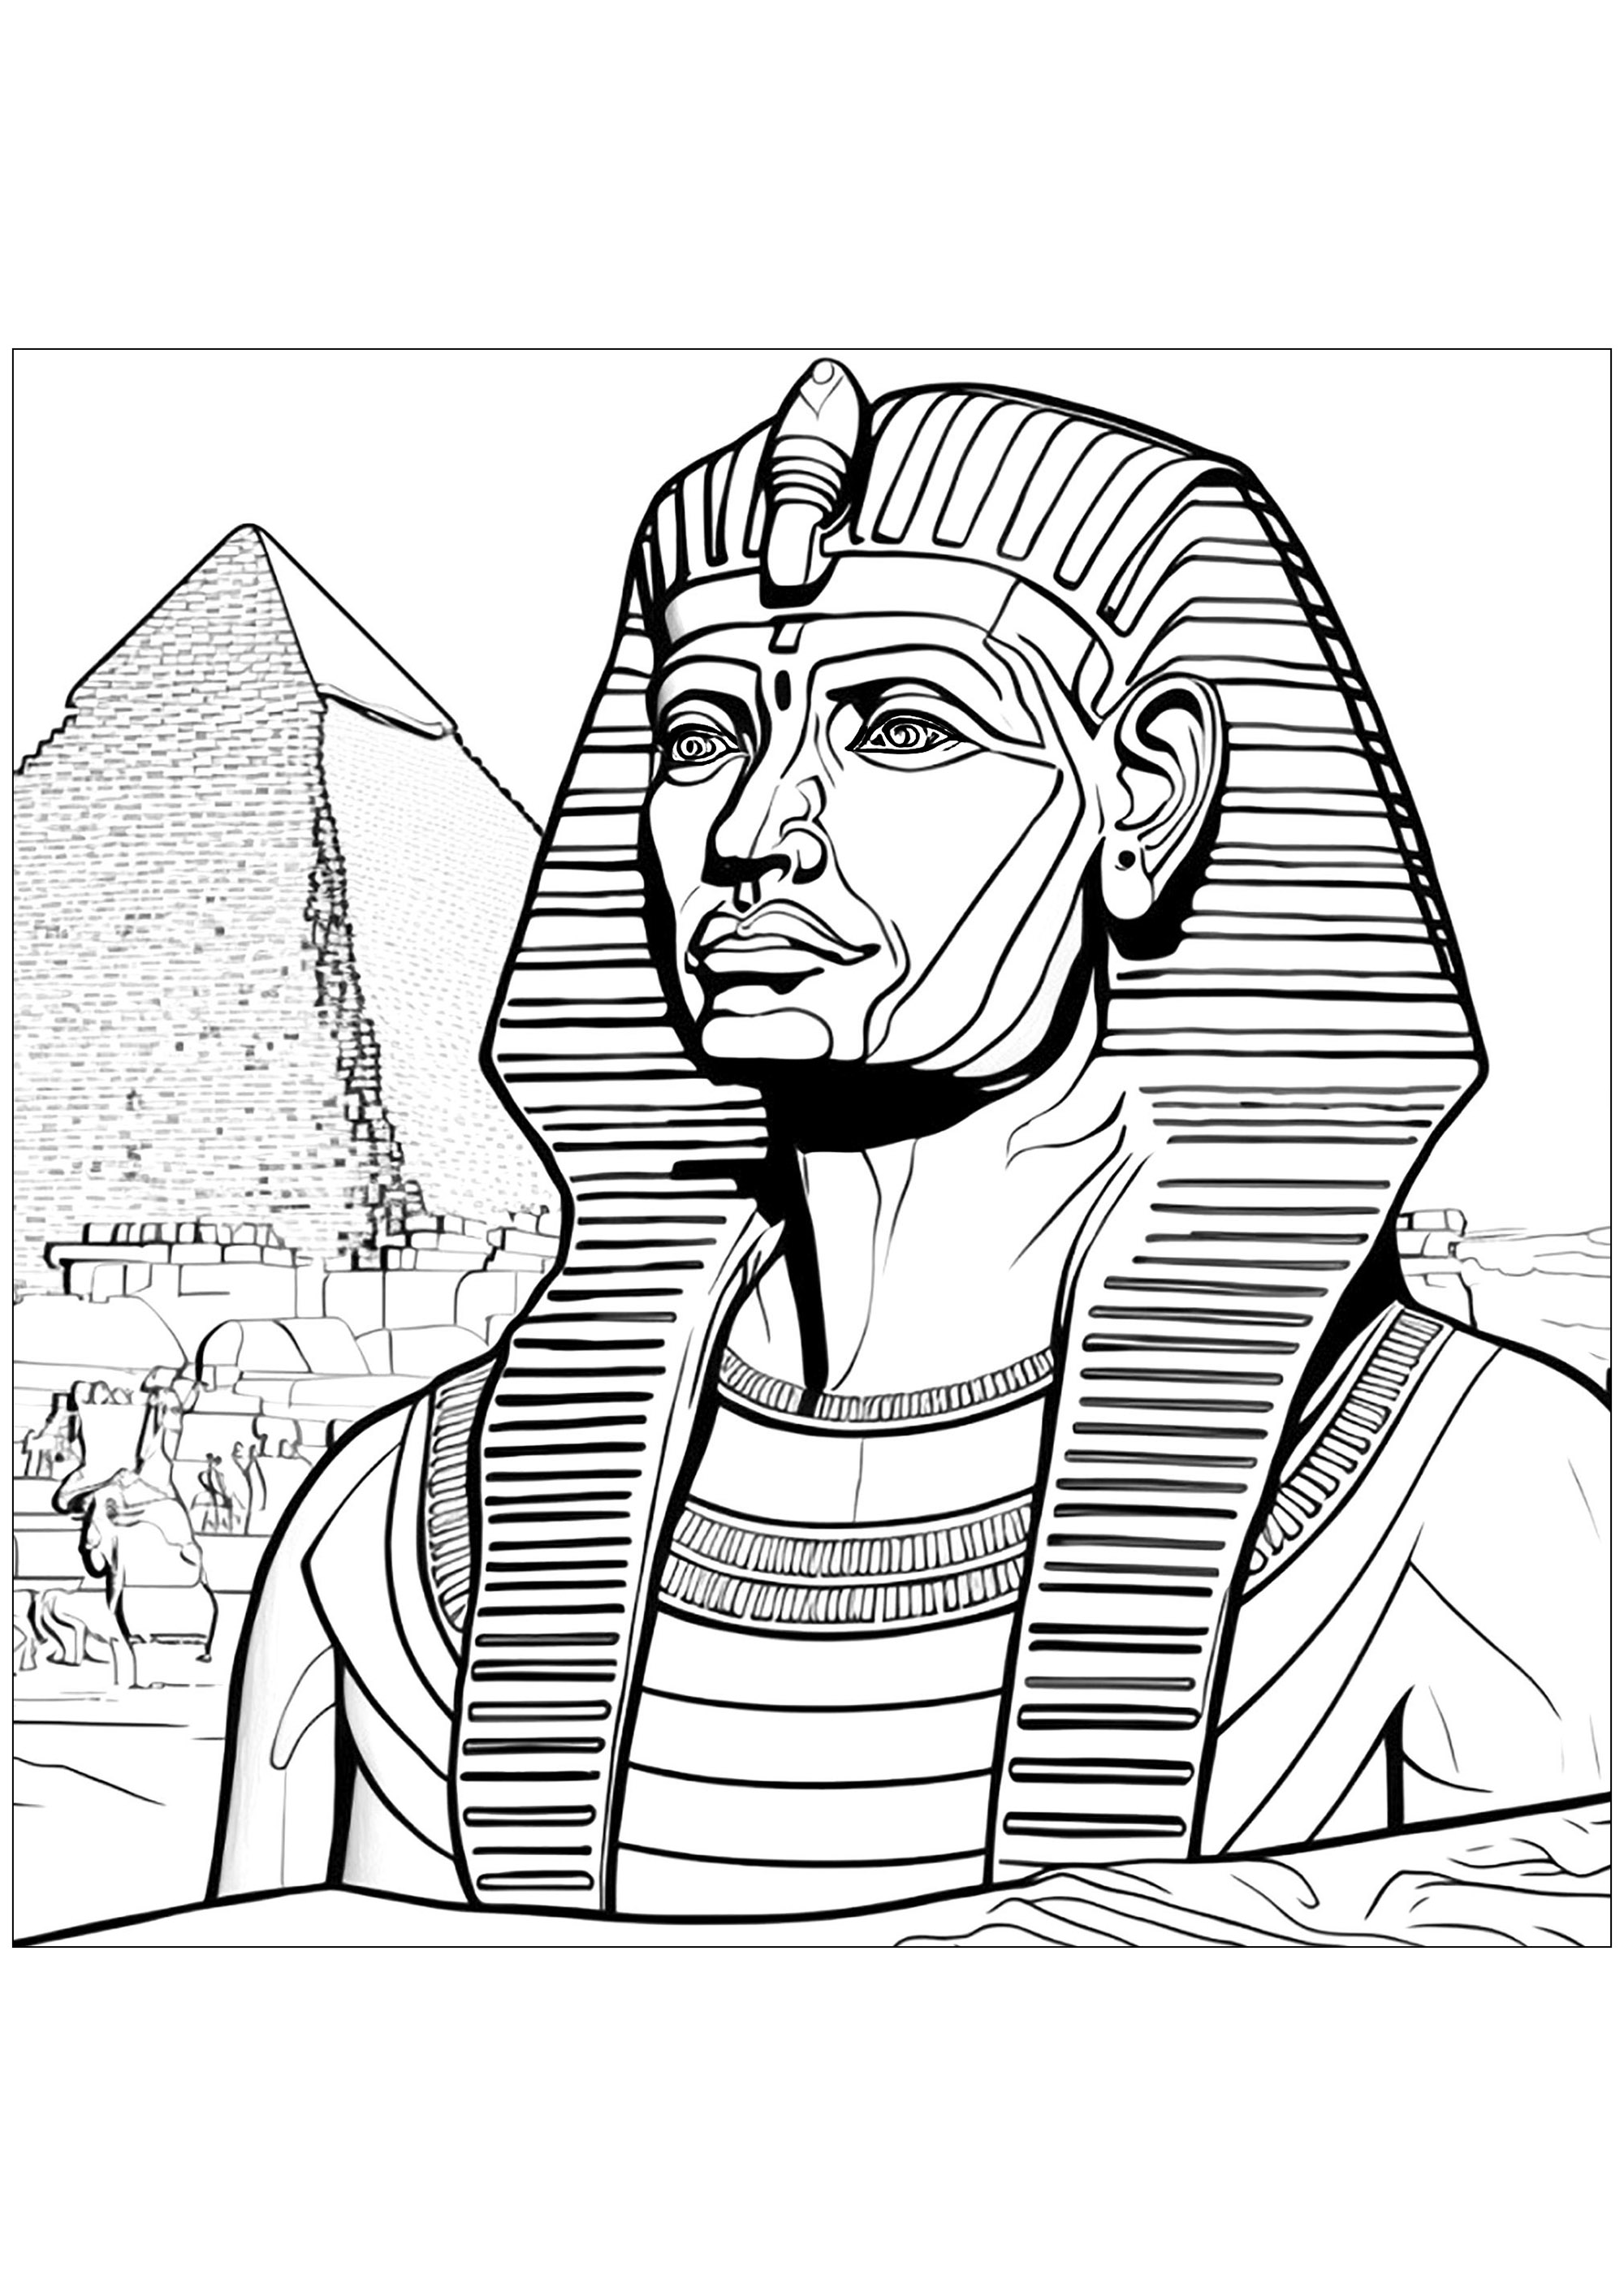 Faraón delante de una pirámide en Egipto. El faraón lleva su corona, que debe colorearse con colores brillantes.
